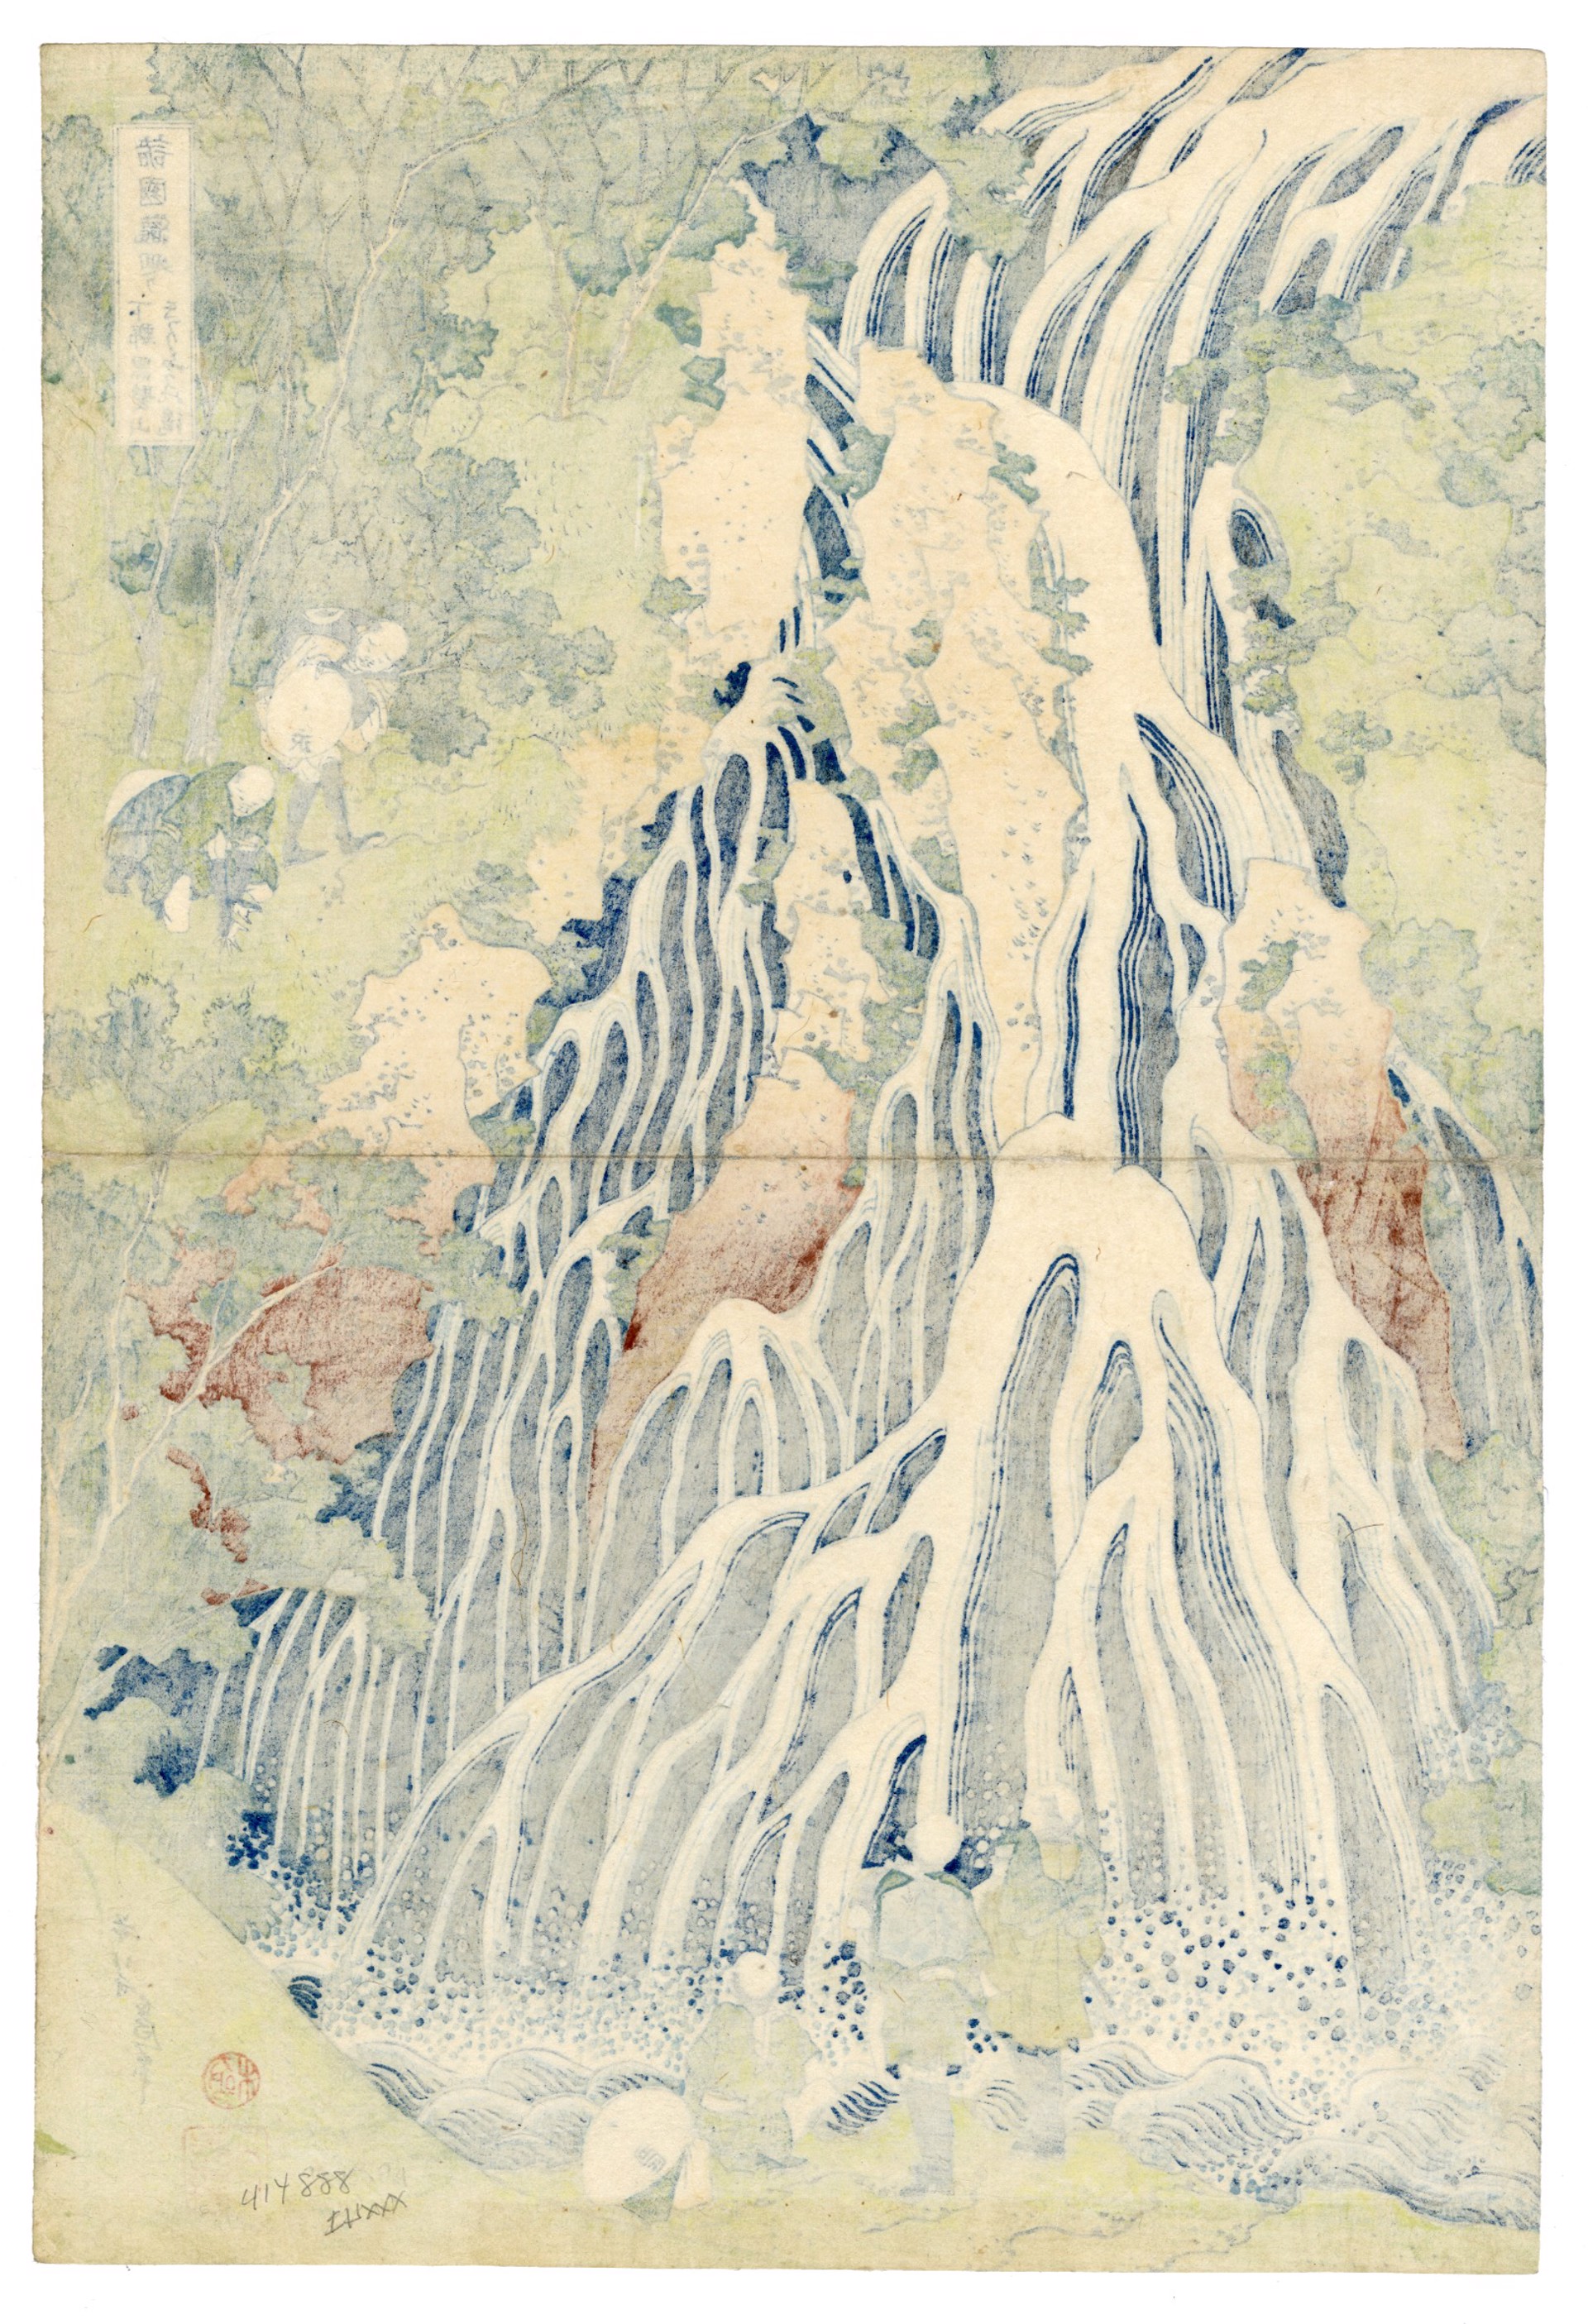 The Falling Mist Waterfall at Mt Kurokami, Shimotsuke Province by Hokusai